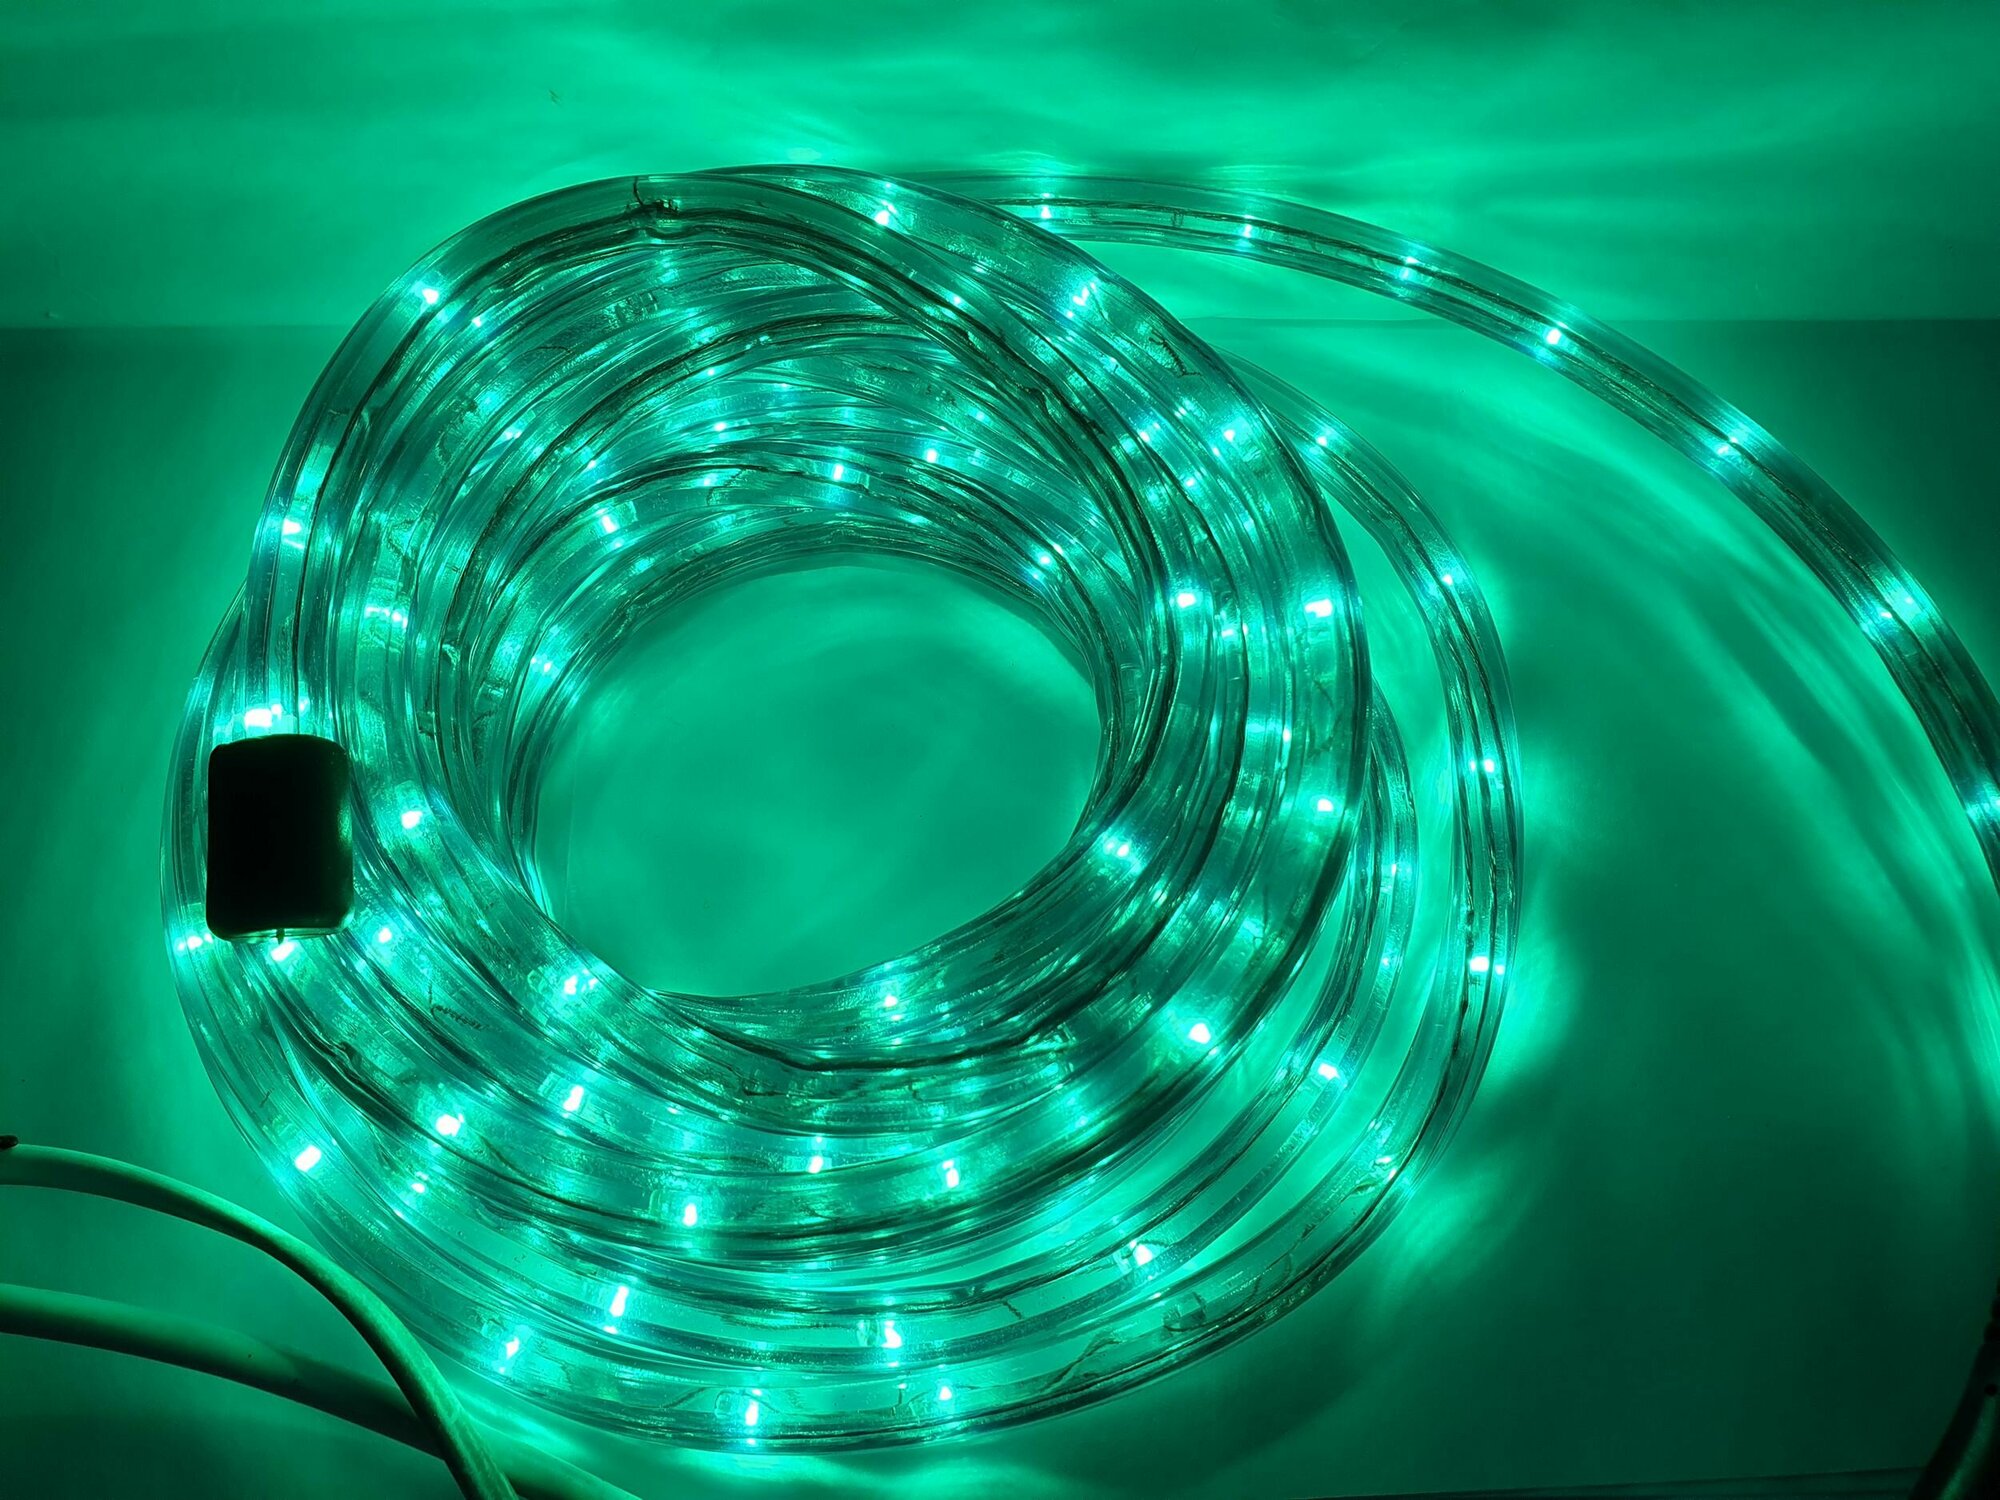 Гирлянда дюралайт многофункциональная 144 лампы с контроллером зеленый цвет восемь режимов свечения. Диаметр дюралайта 12 метров.